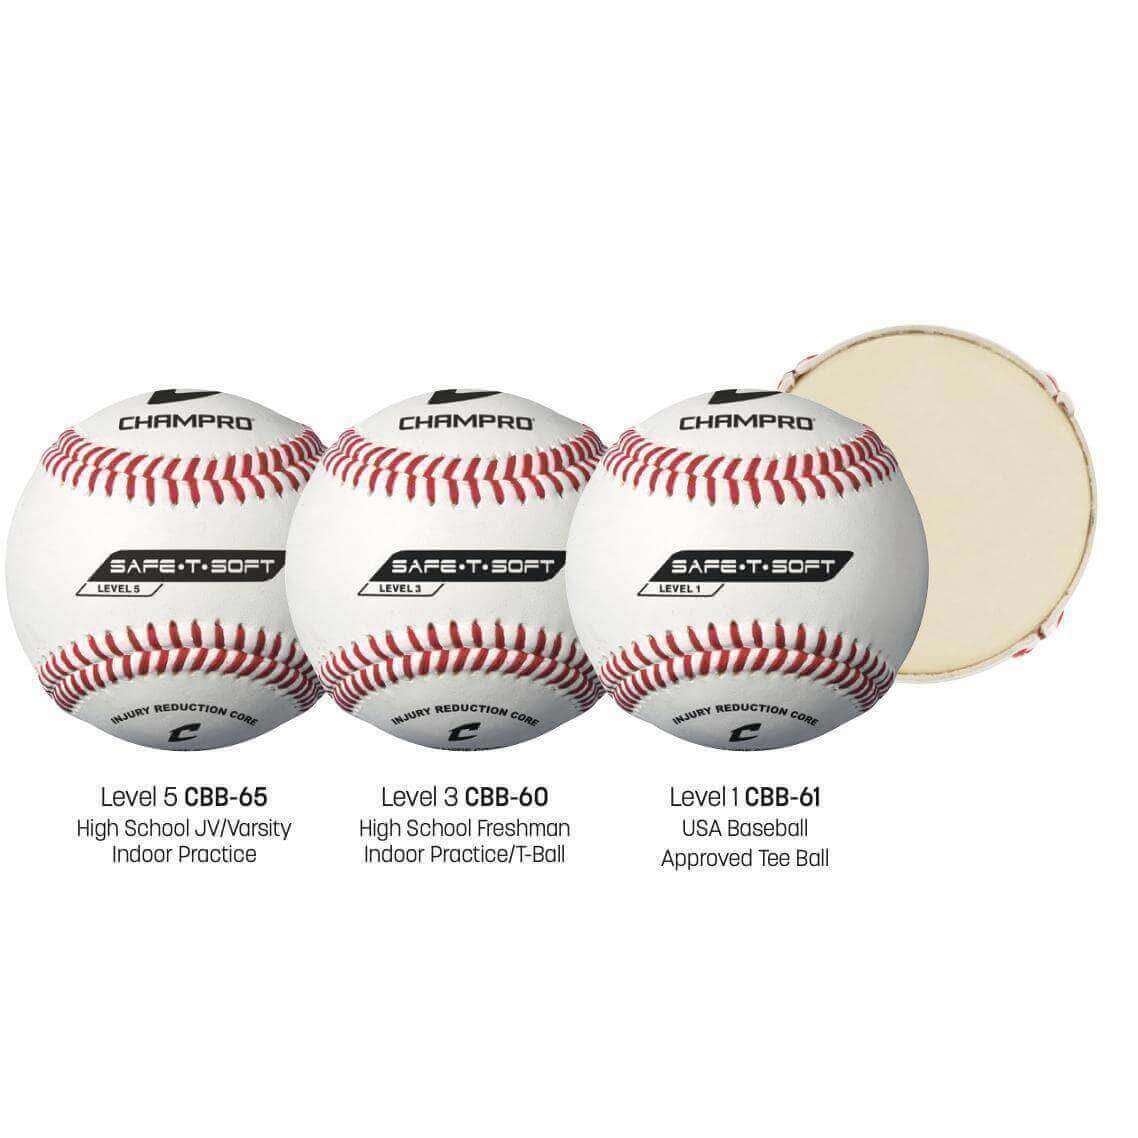 Champro Safe-T-Soft Series Baseballs (1 Dozen)